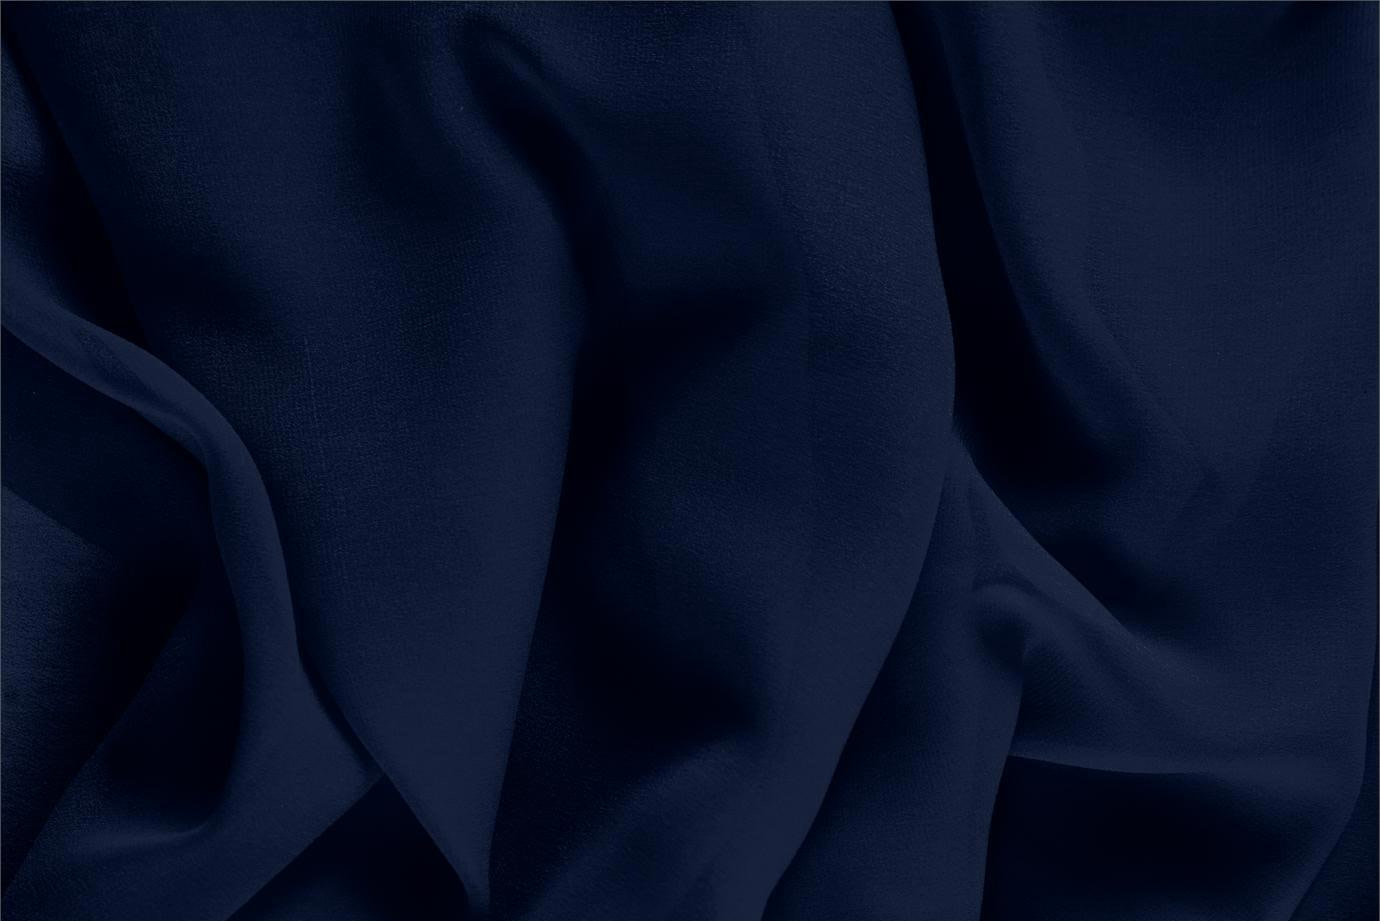 Tissu Couture Georgette Bleu navy en Soie UN000450